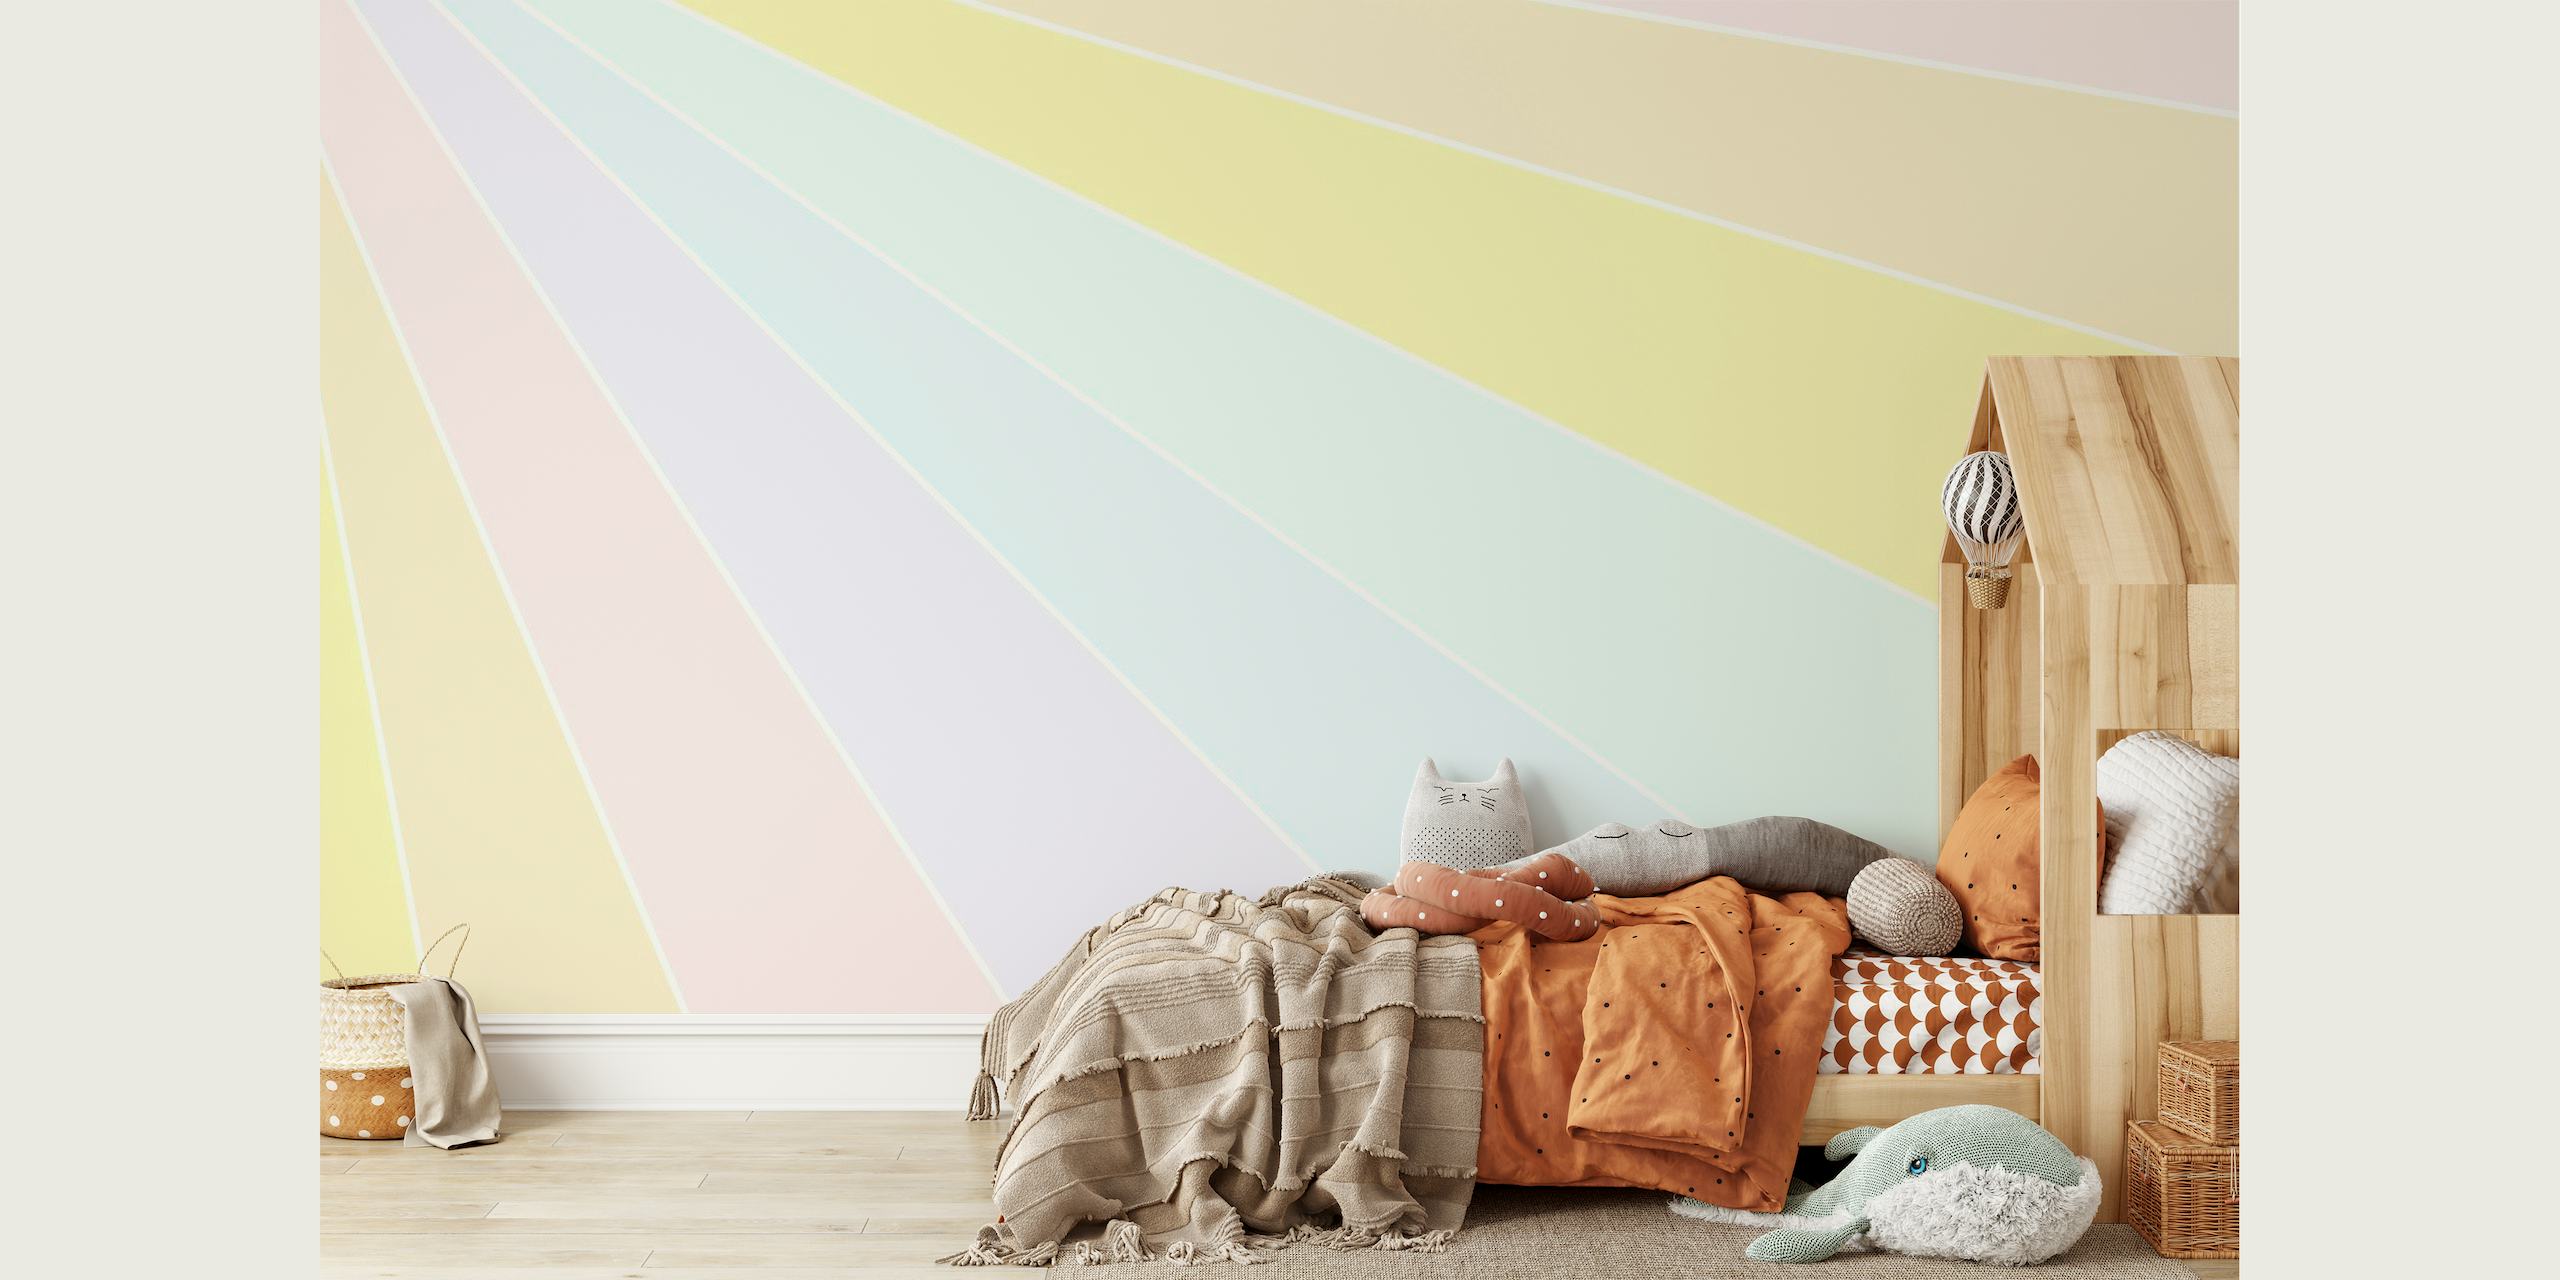 Pastelkleurige regenboogmuurschildering met zachte, dromerige kleurbanden